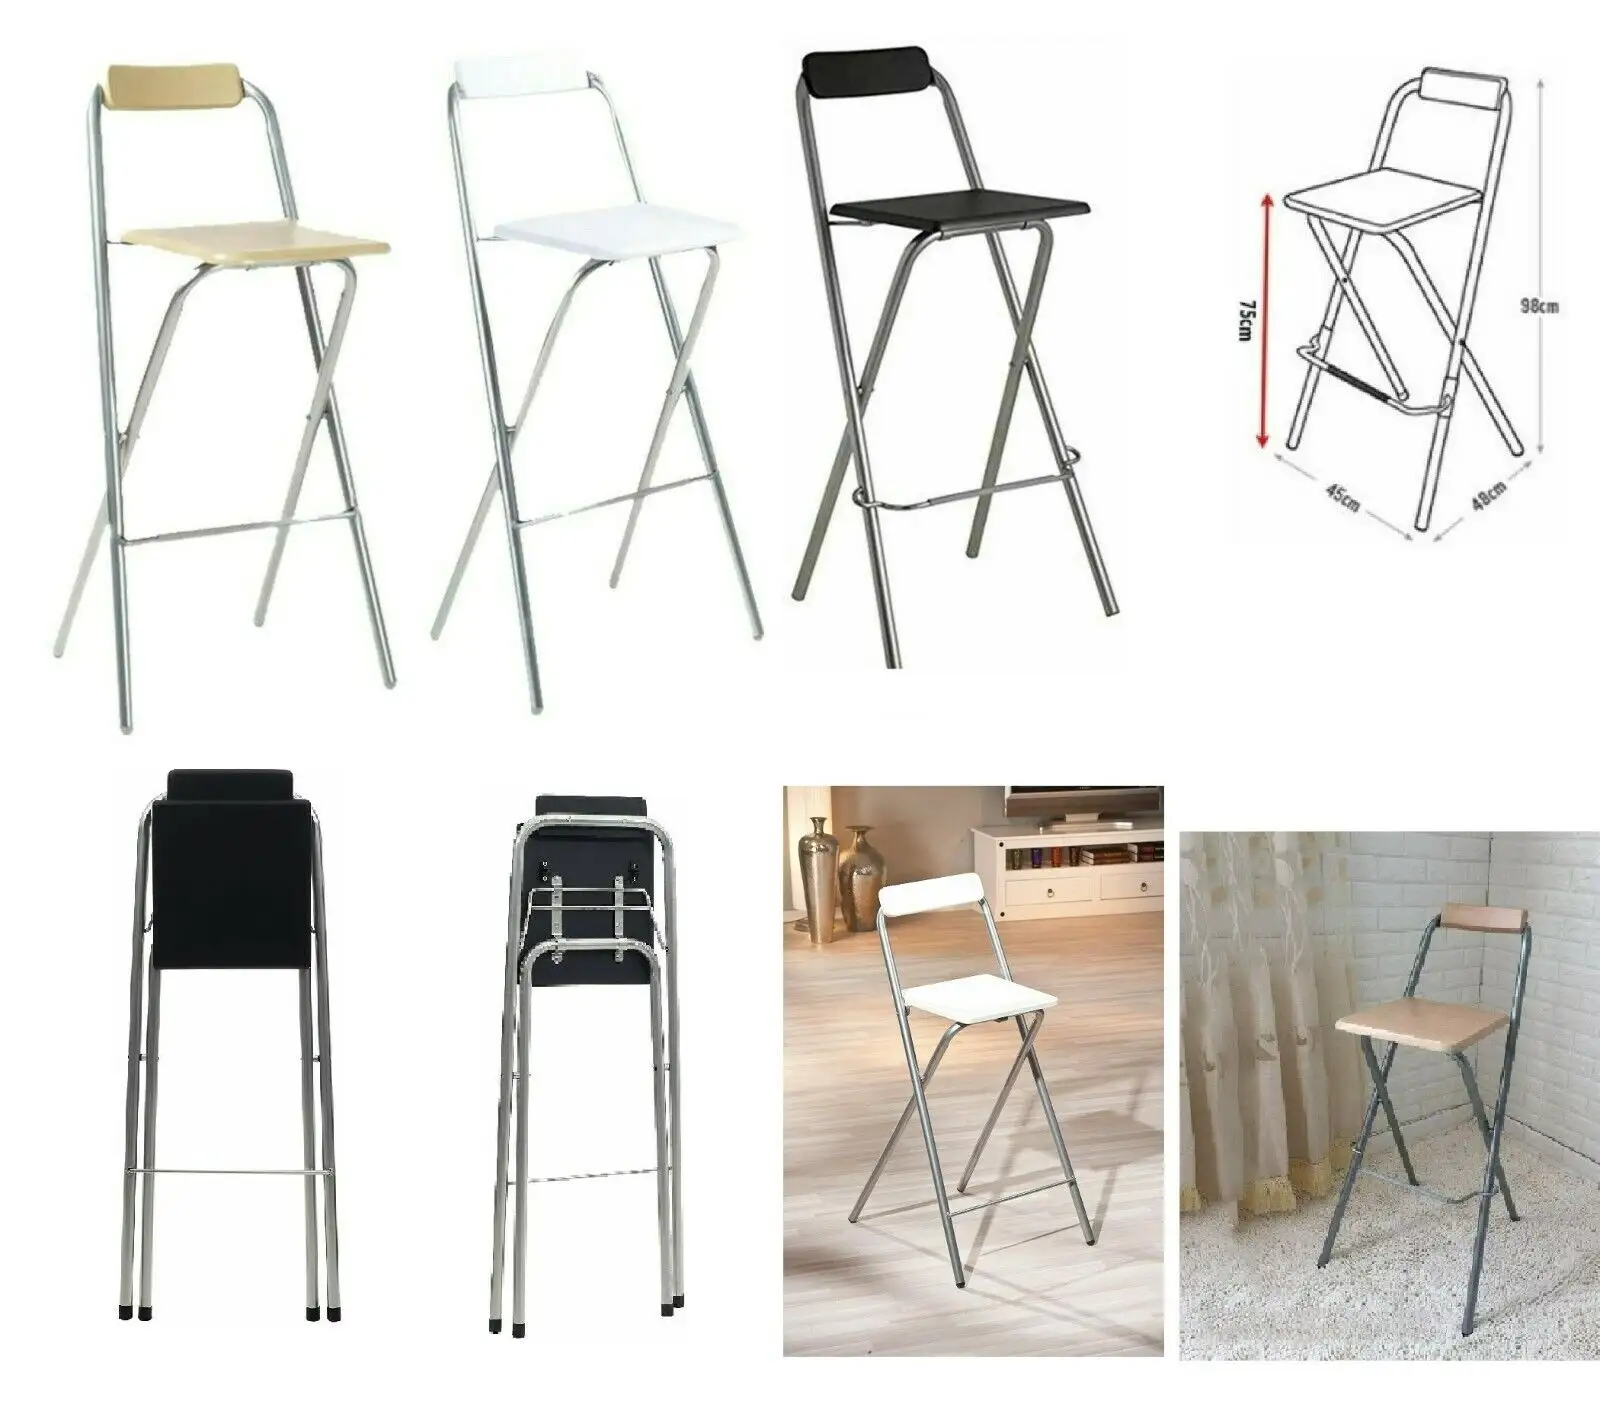 등받이와 발판이 있는 접이식 바 의자, 주방 카운터 높이 의자, 덮개를 씌운 좌석 경량 접이식 바체어